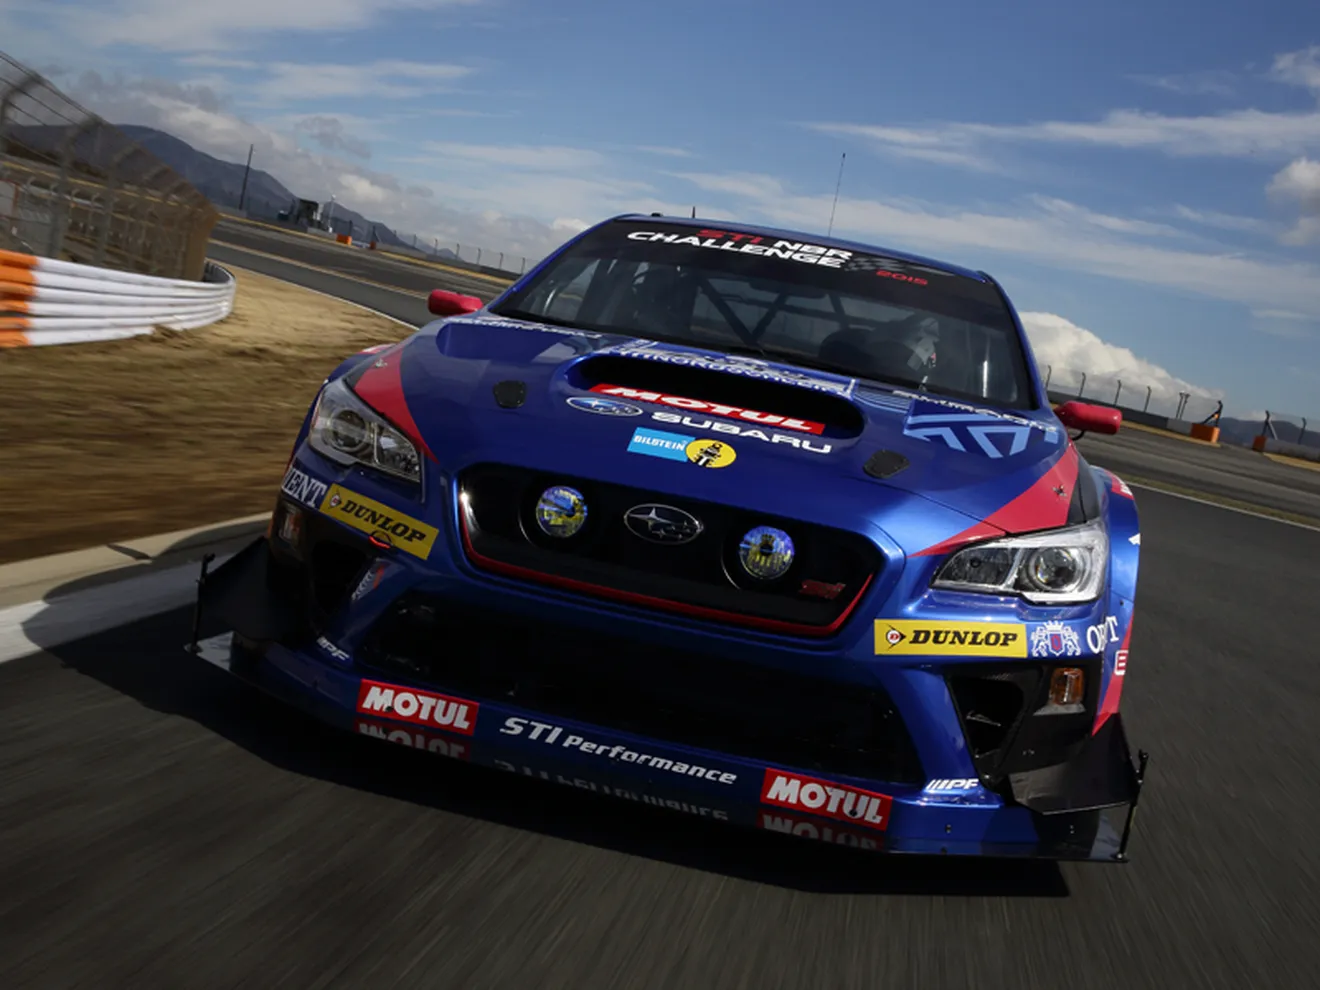 Subaru apuesta por la competición en 2016